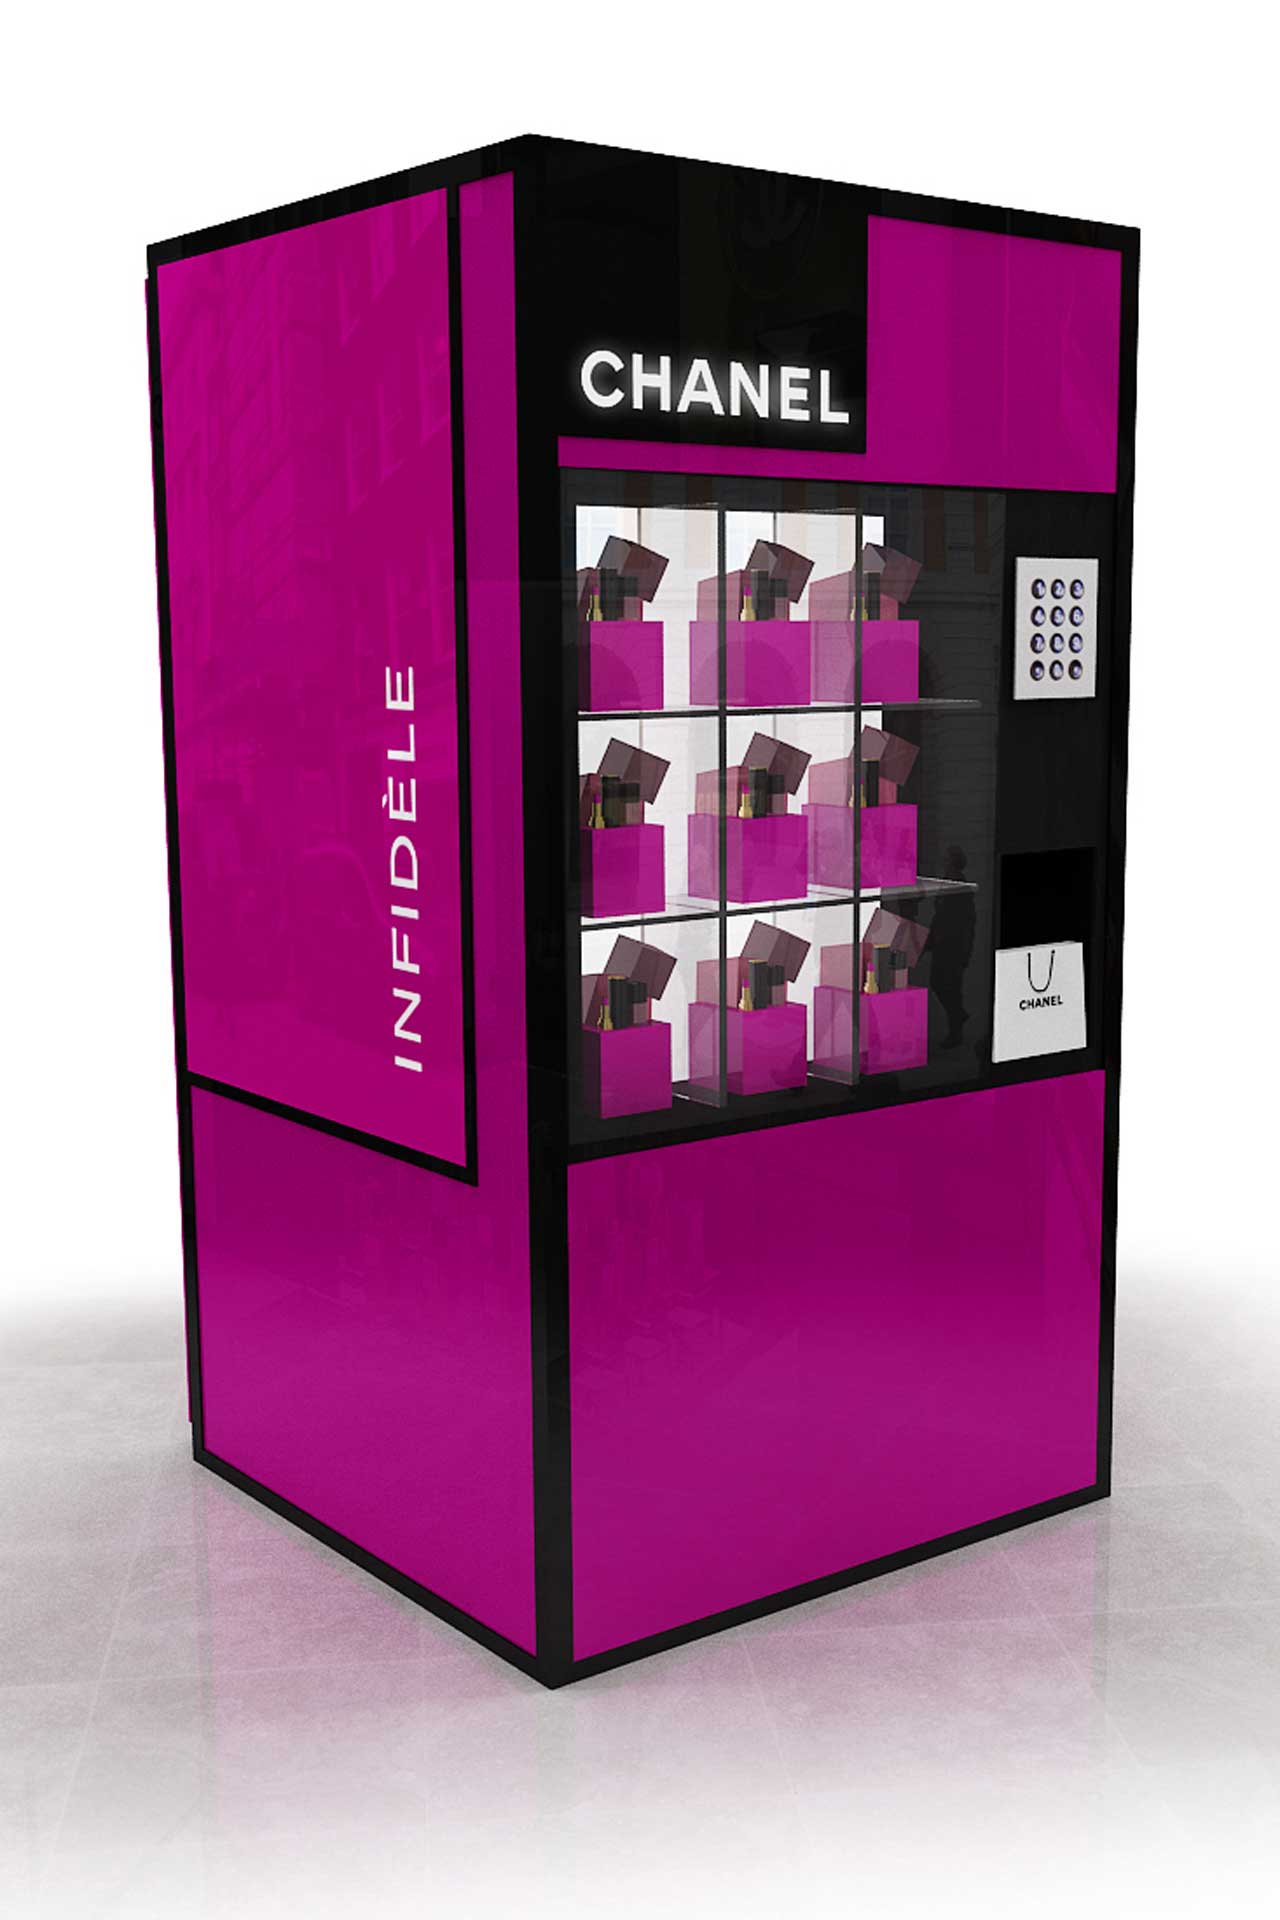 Automat kosmetyczny Chanel na Fashion's Night Out, fot. serwis prasowy